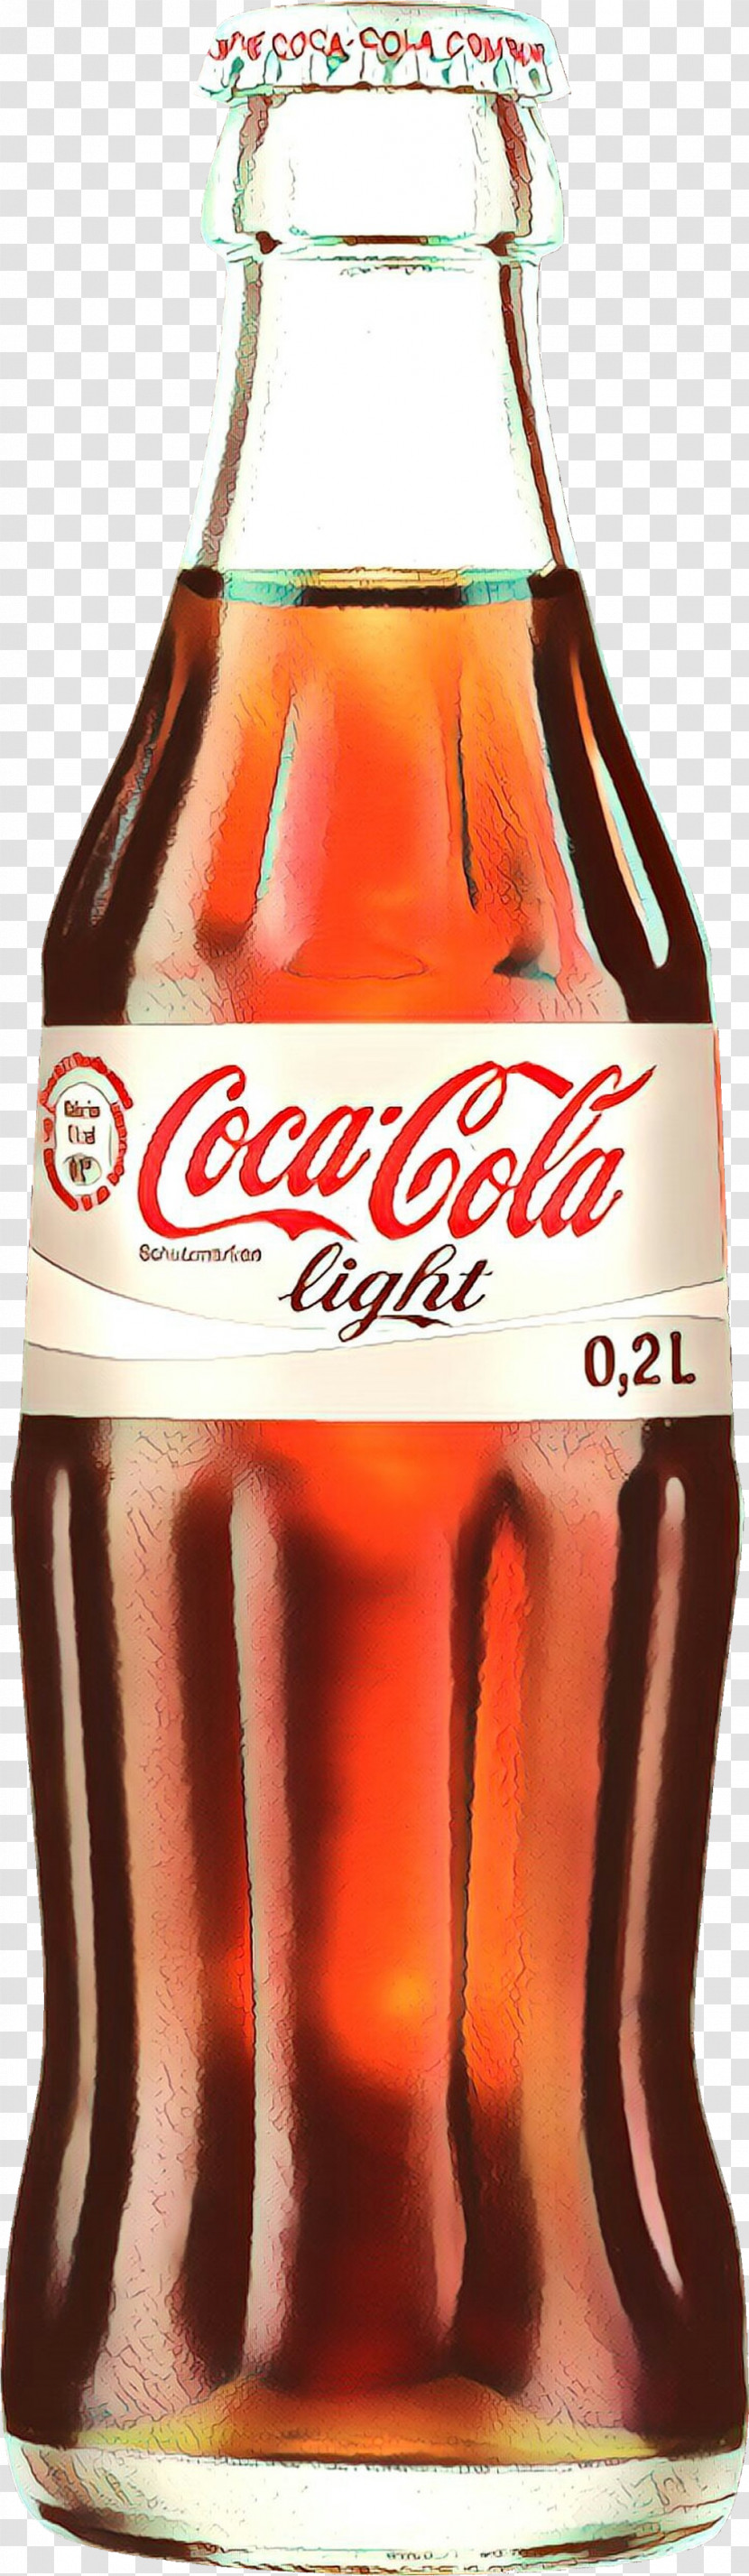 Coca-cola Transparent PNG